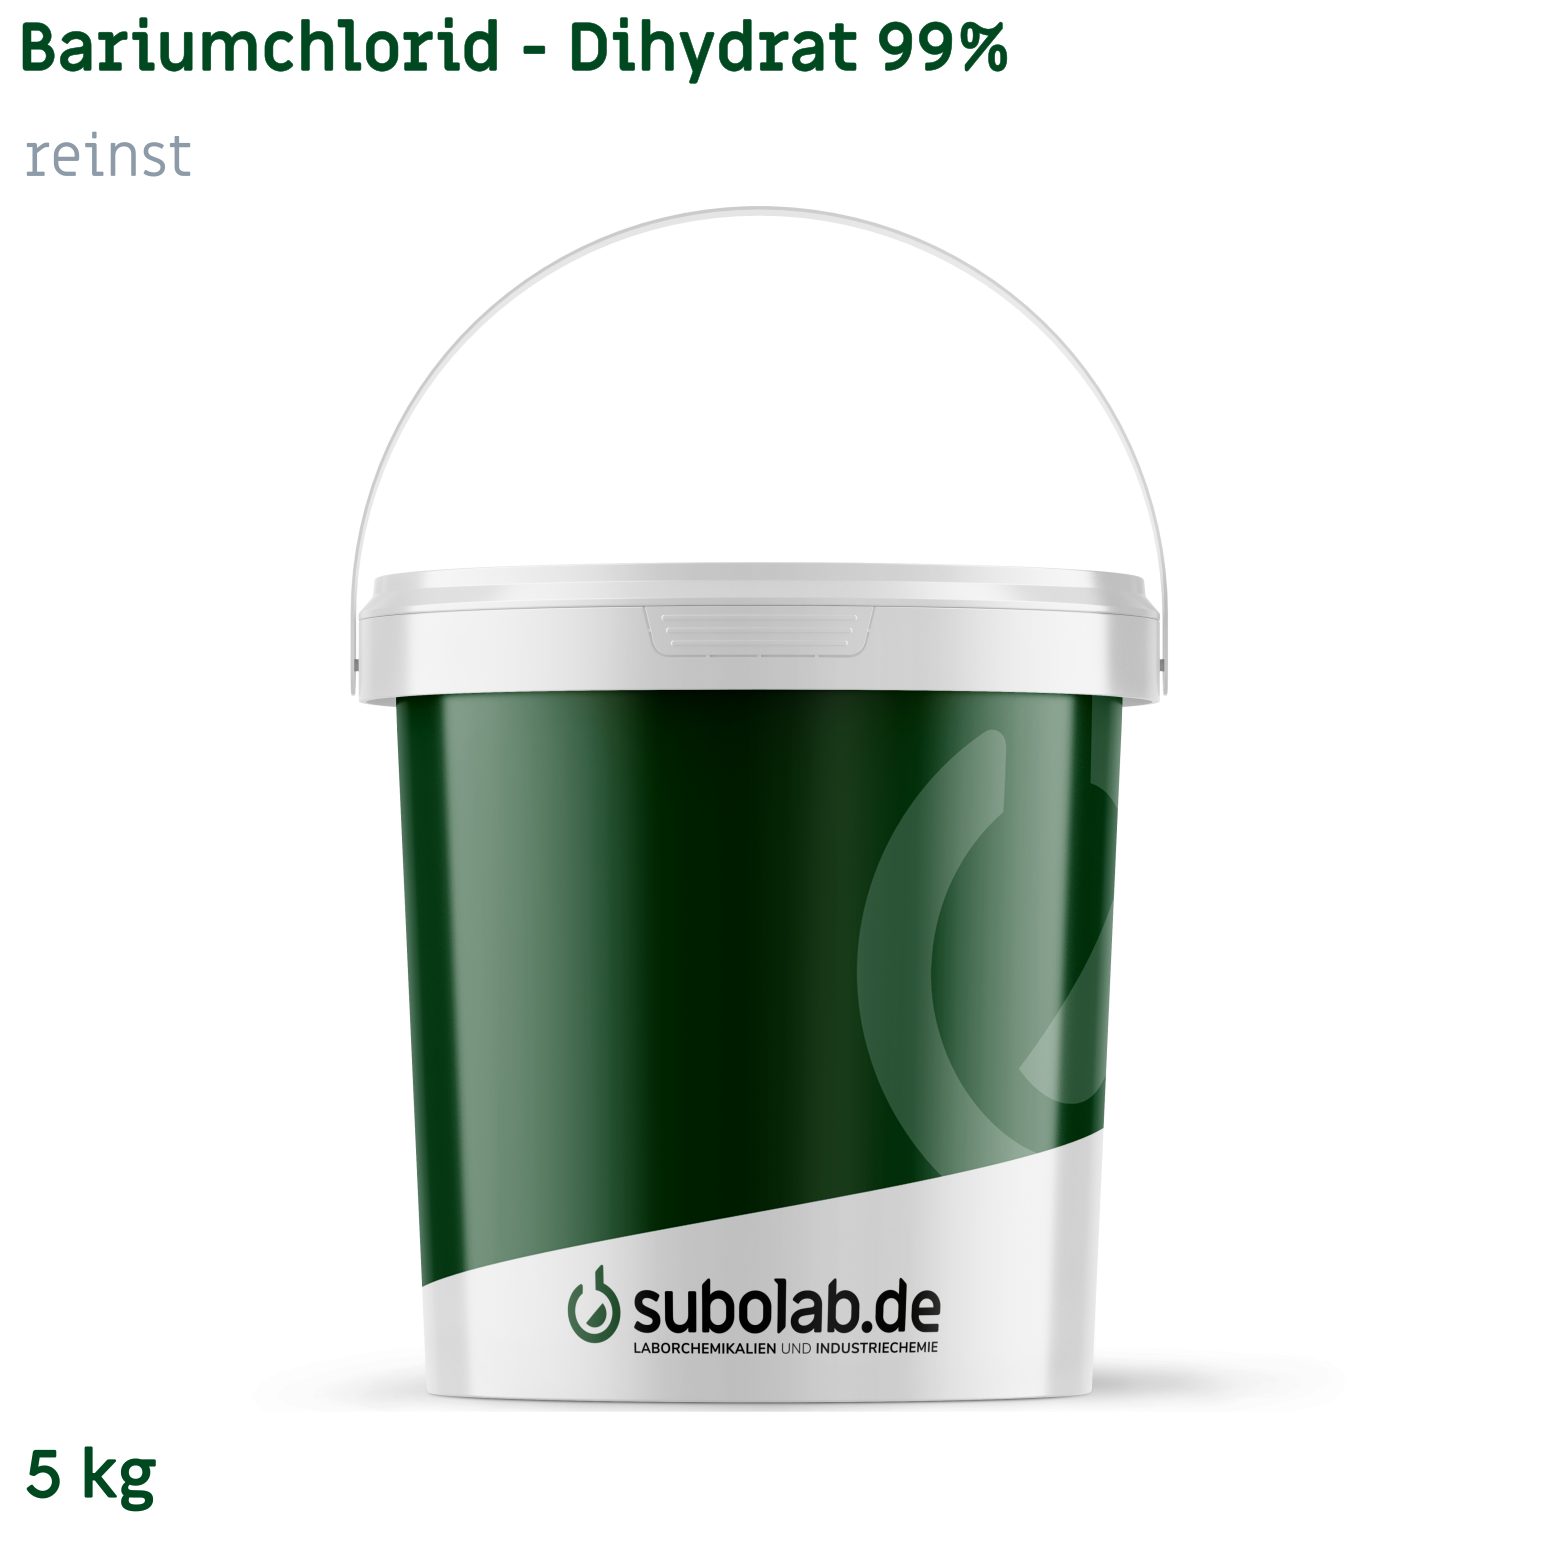 Bild von Bariumchlorid - Dihydrat 99% reinst (5 kg)